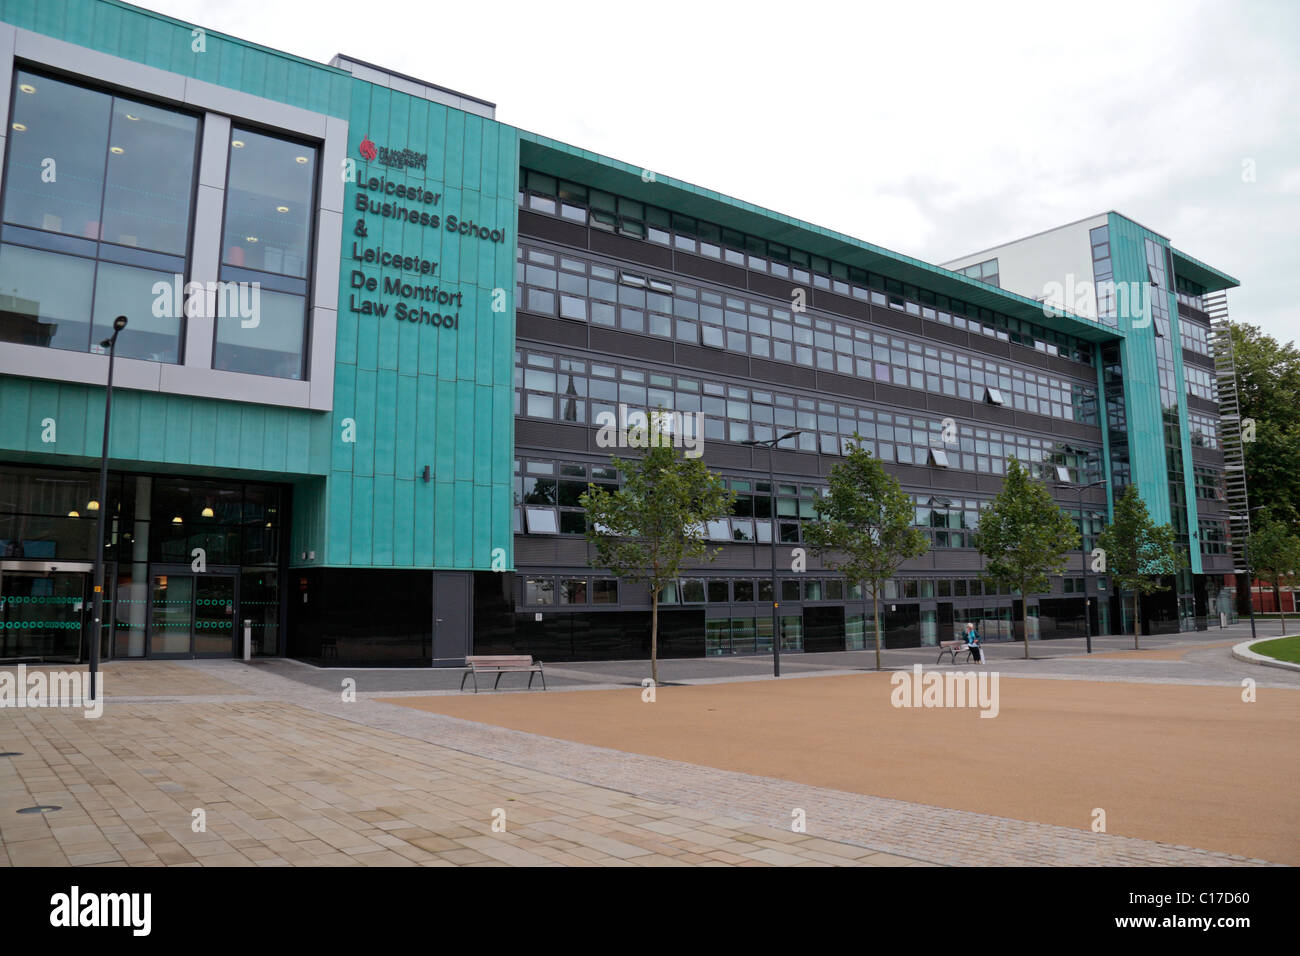 Le Leicester Business School et à la Faculté de droit de l'édifice de l'Université De Montfort (DMU) dans la région de Leicester, England, UK. Banque D'Images